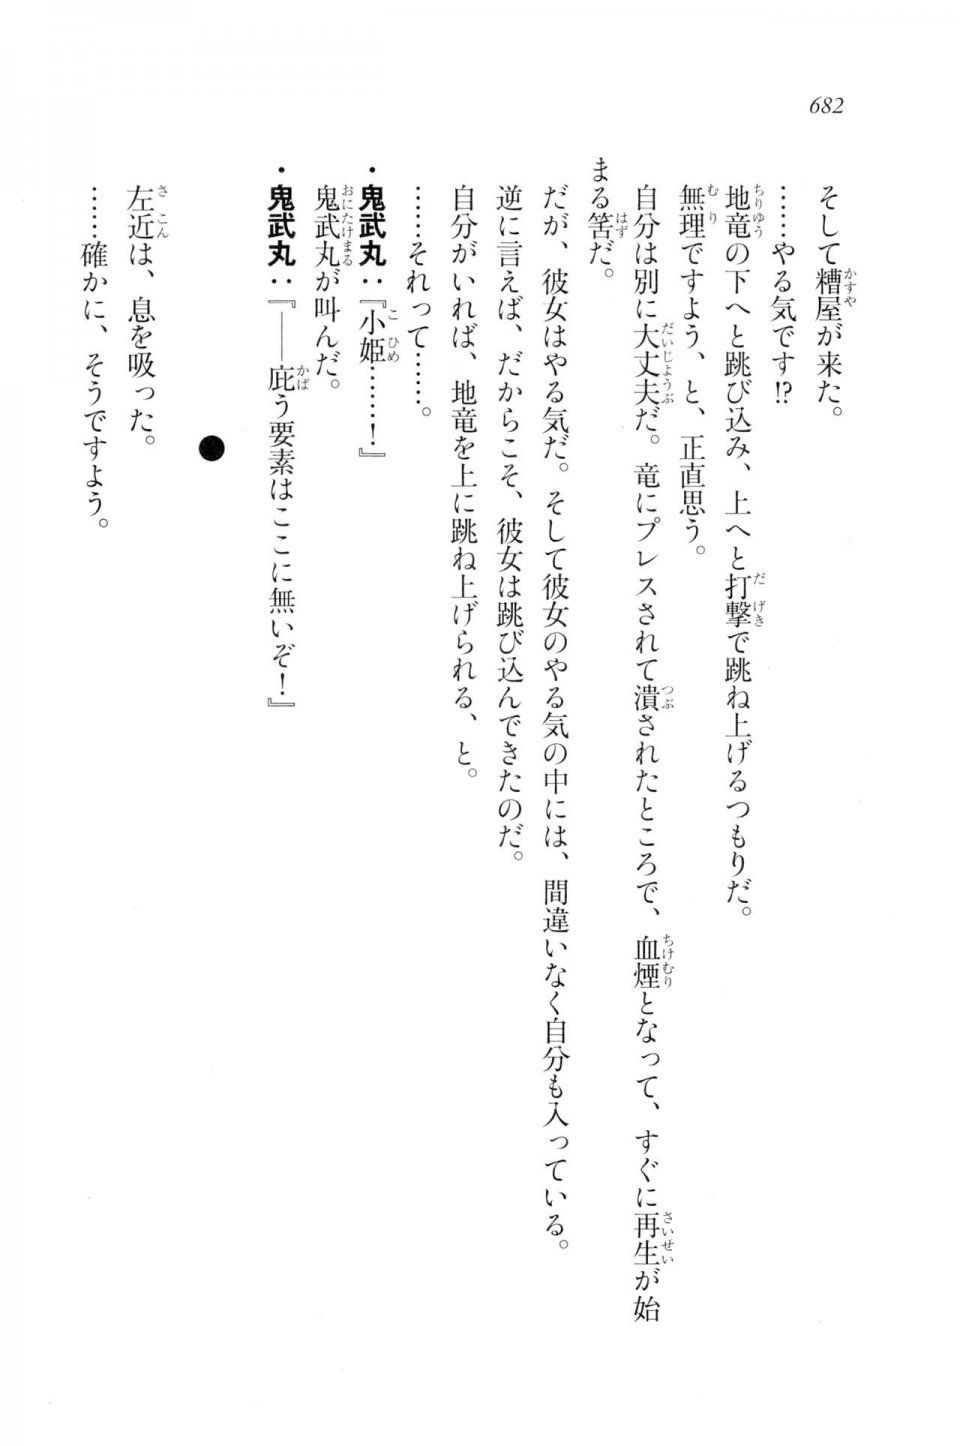 Kyoukai Senjou no Horizon LN Vol 20(8B) - Photo #682